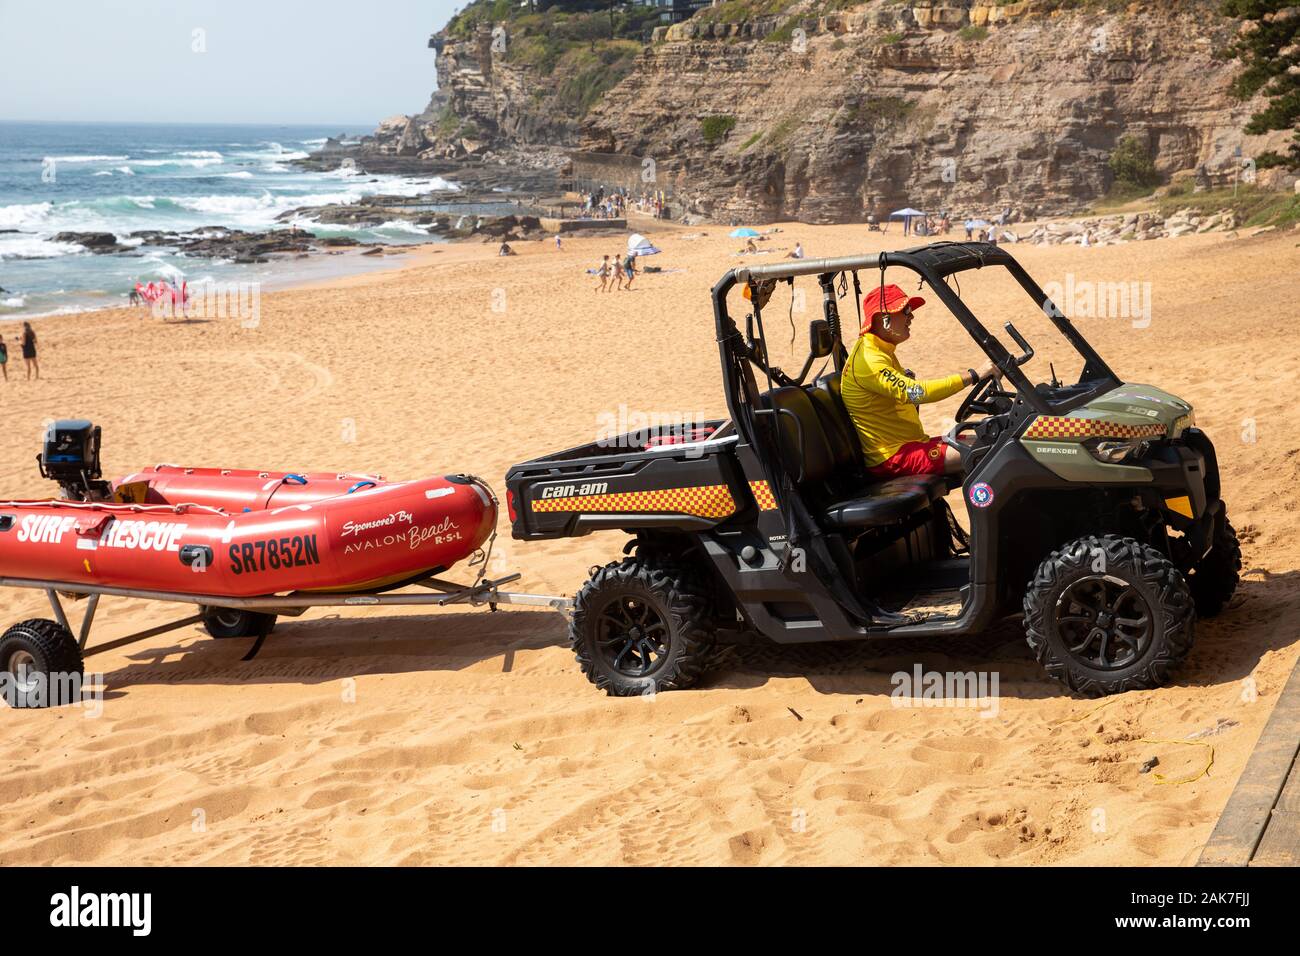 Sauveteur volontaire sur la plage d'Avalon Sydney conduite peut être hors route buggy de sauvetage tirant sauveteurs rouge zodiac Dinghy, Nouvelle-Galles du Sud, Australie Banque D'Images